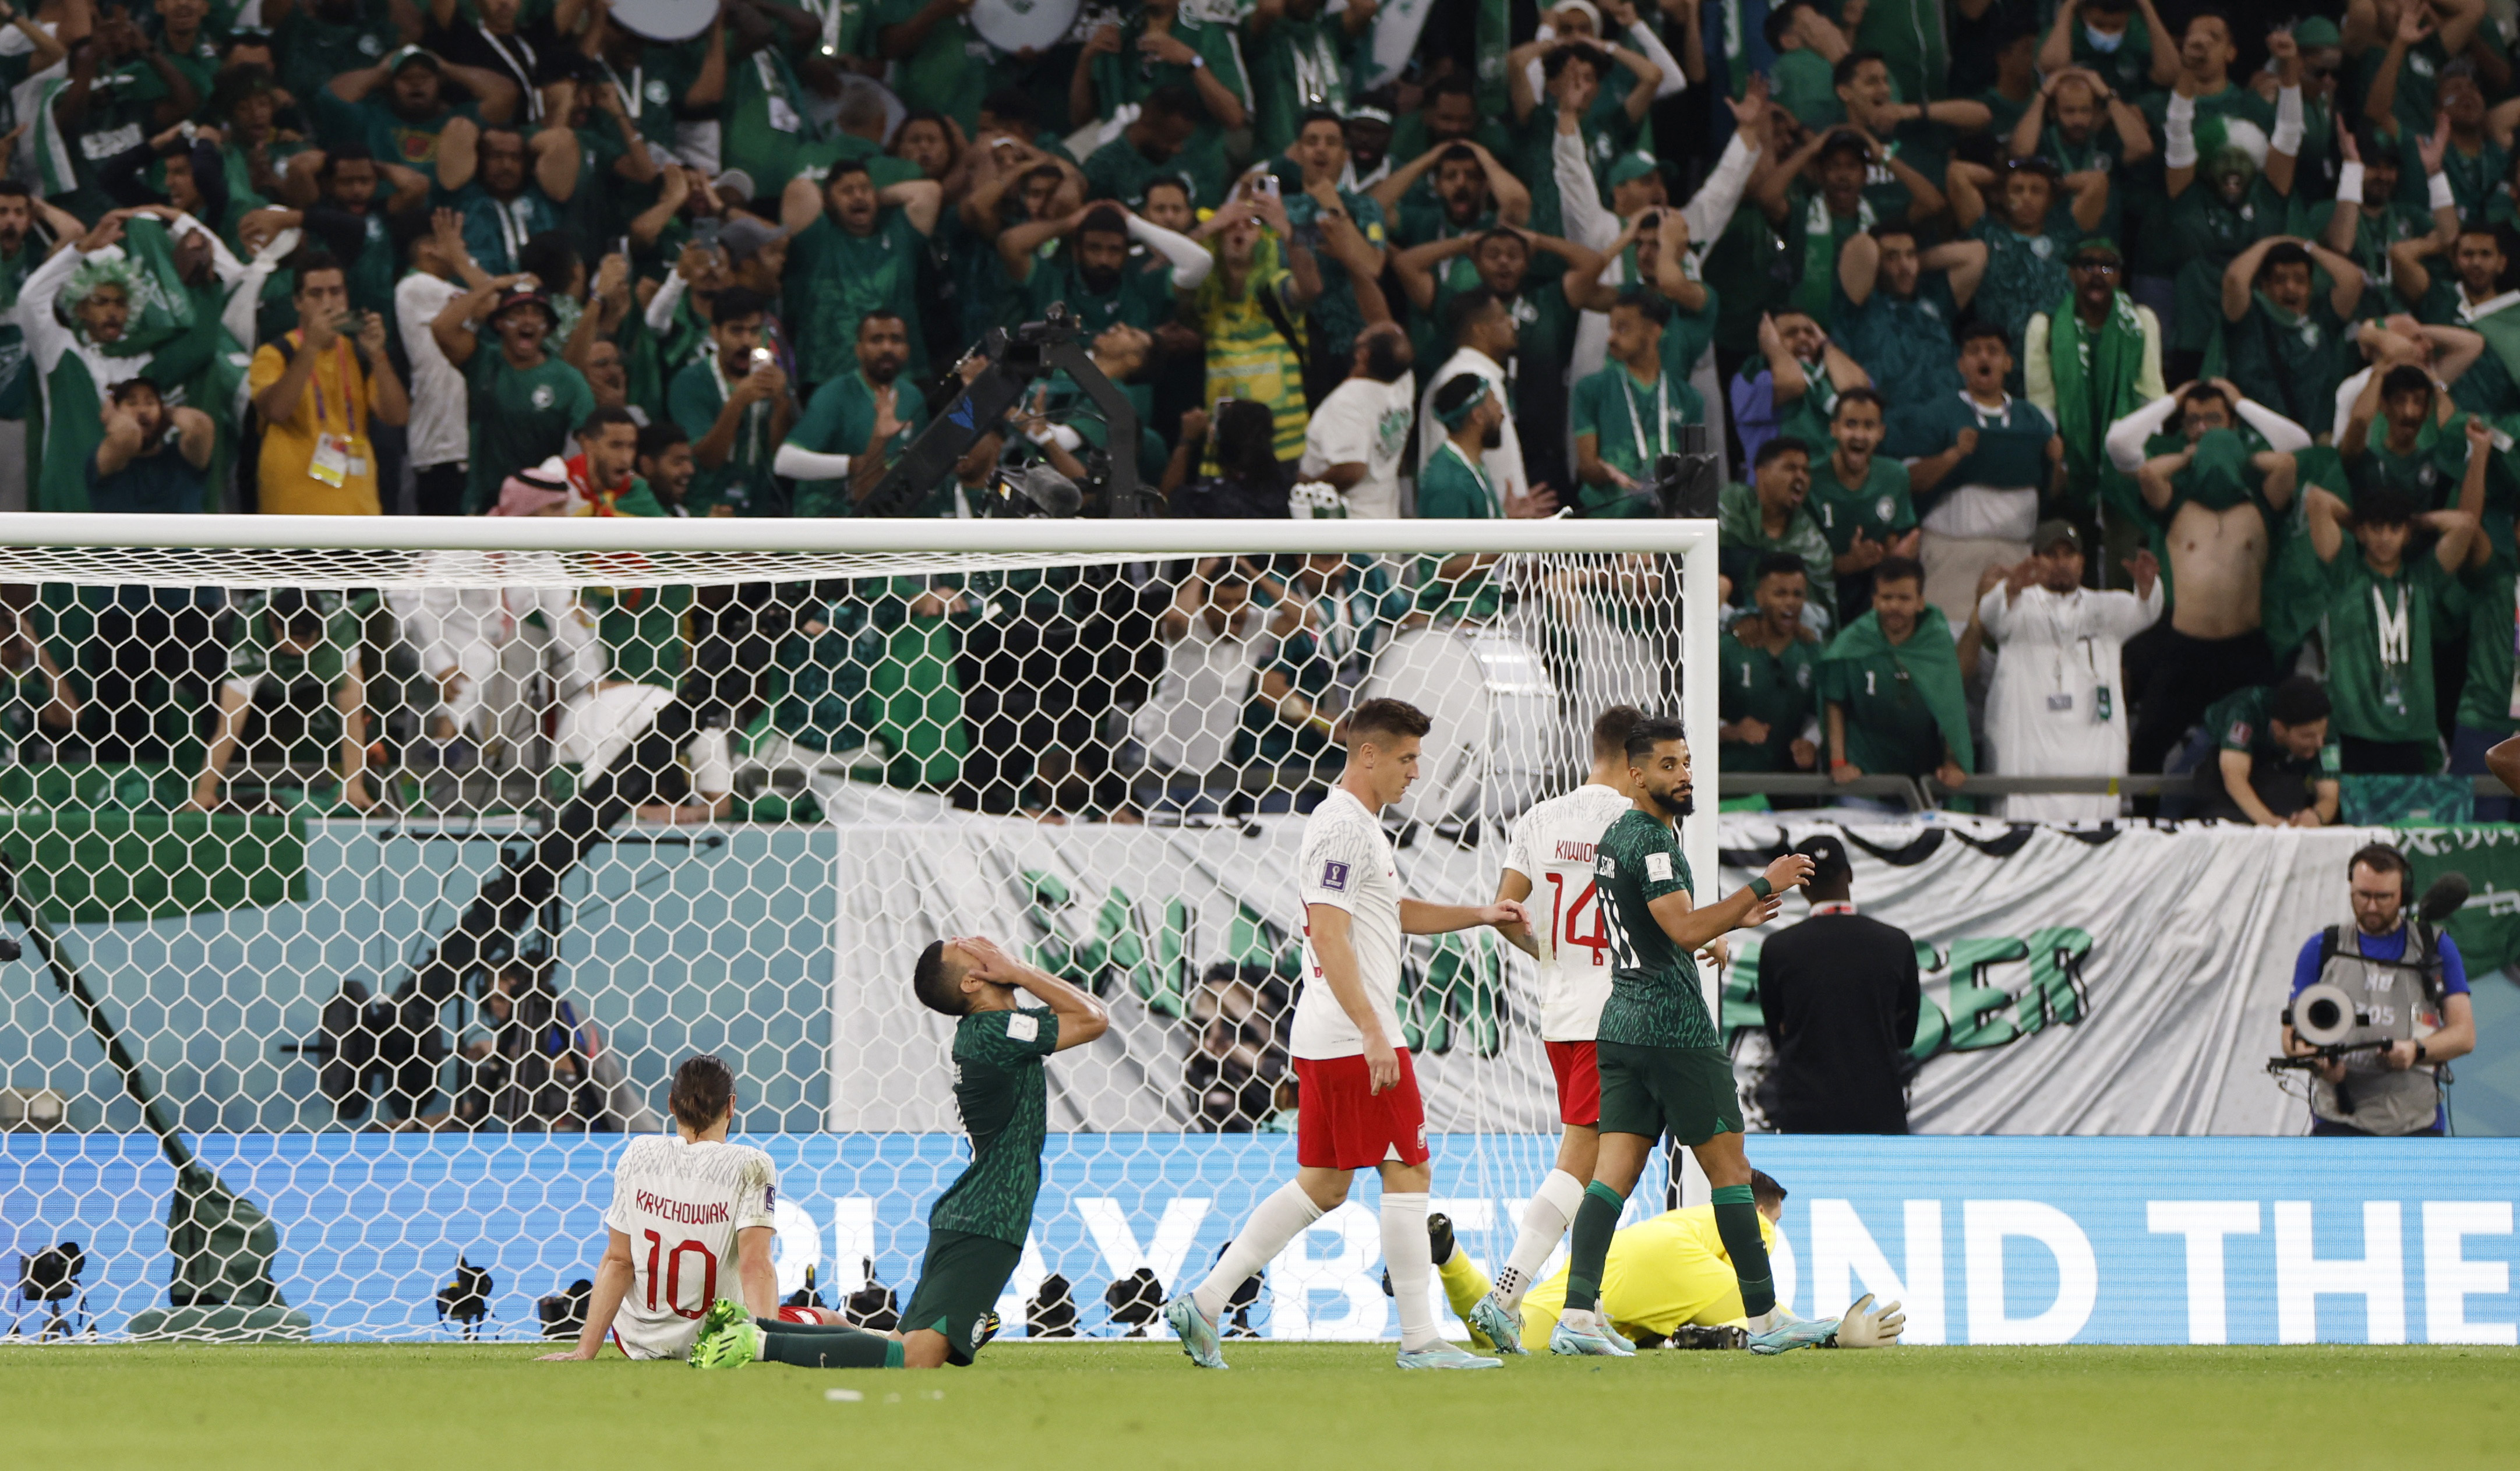 Reacción de Abdulellah Al-Malki tras no poder mandar el balón al fondo de la red y empatar el juego. REUTERS/Issei Kato